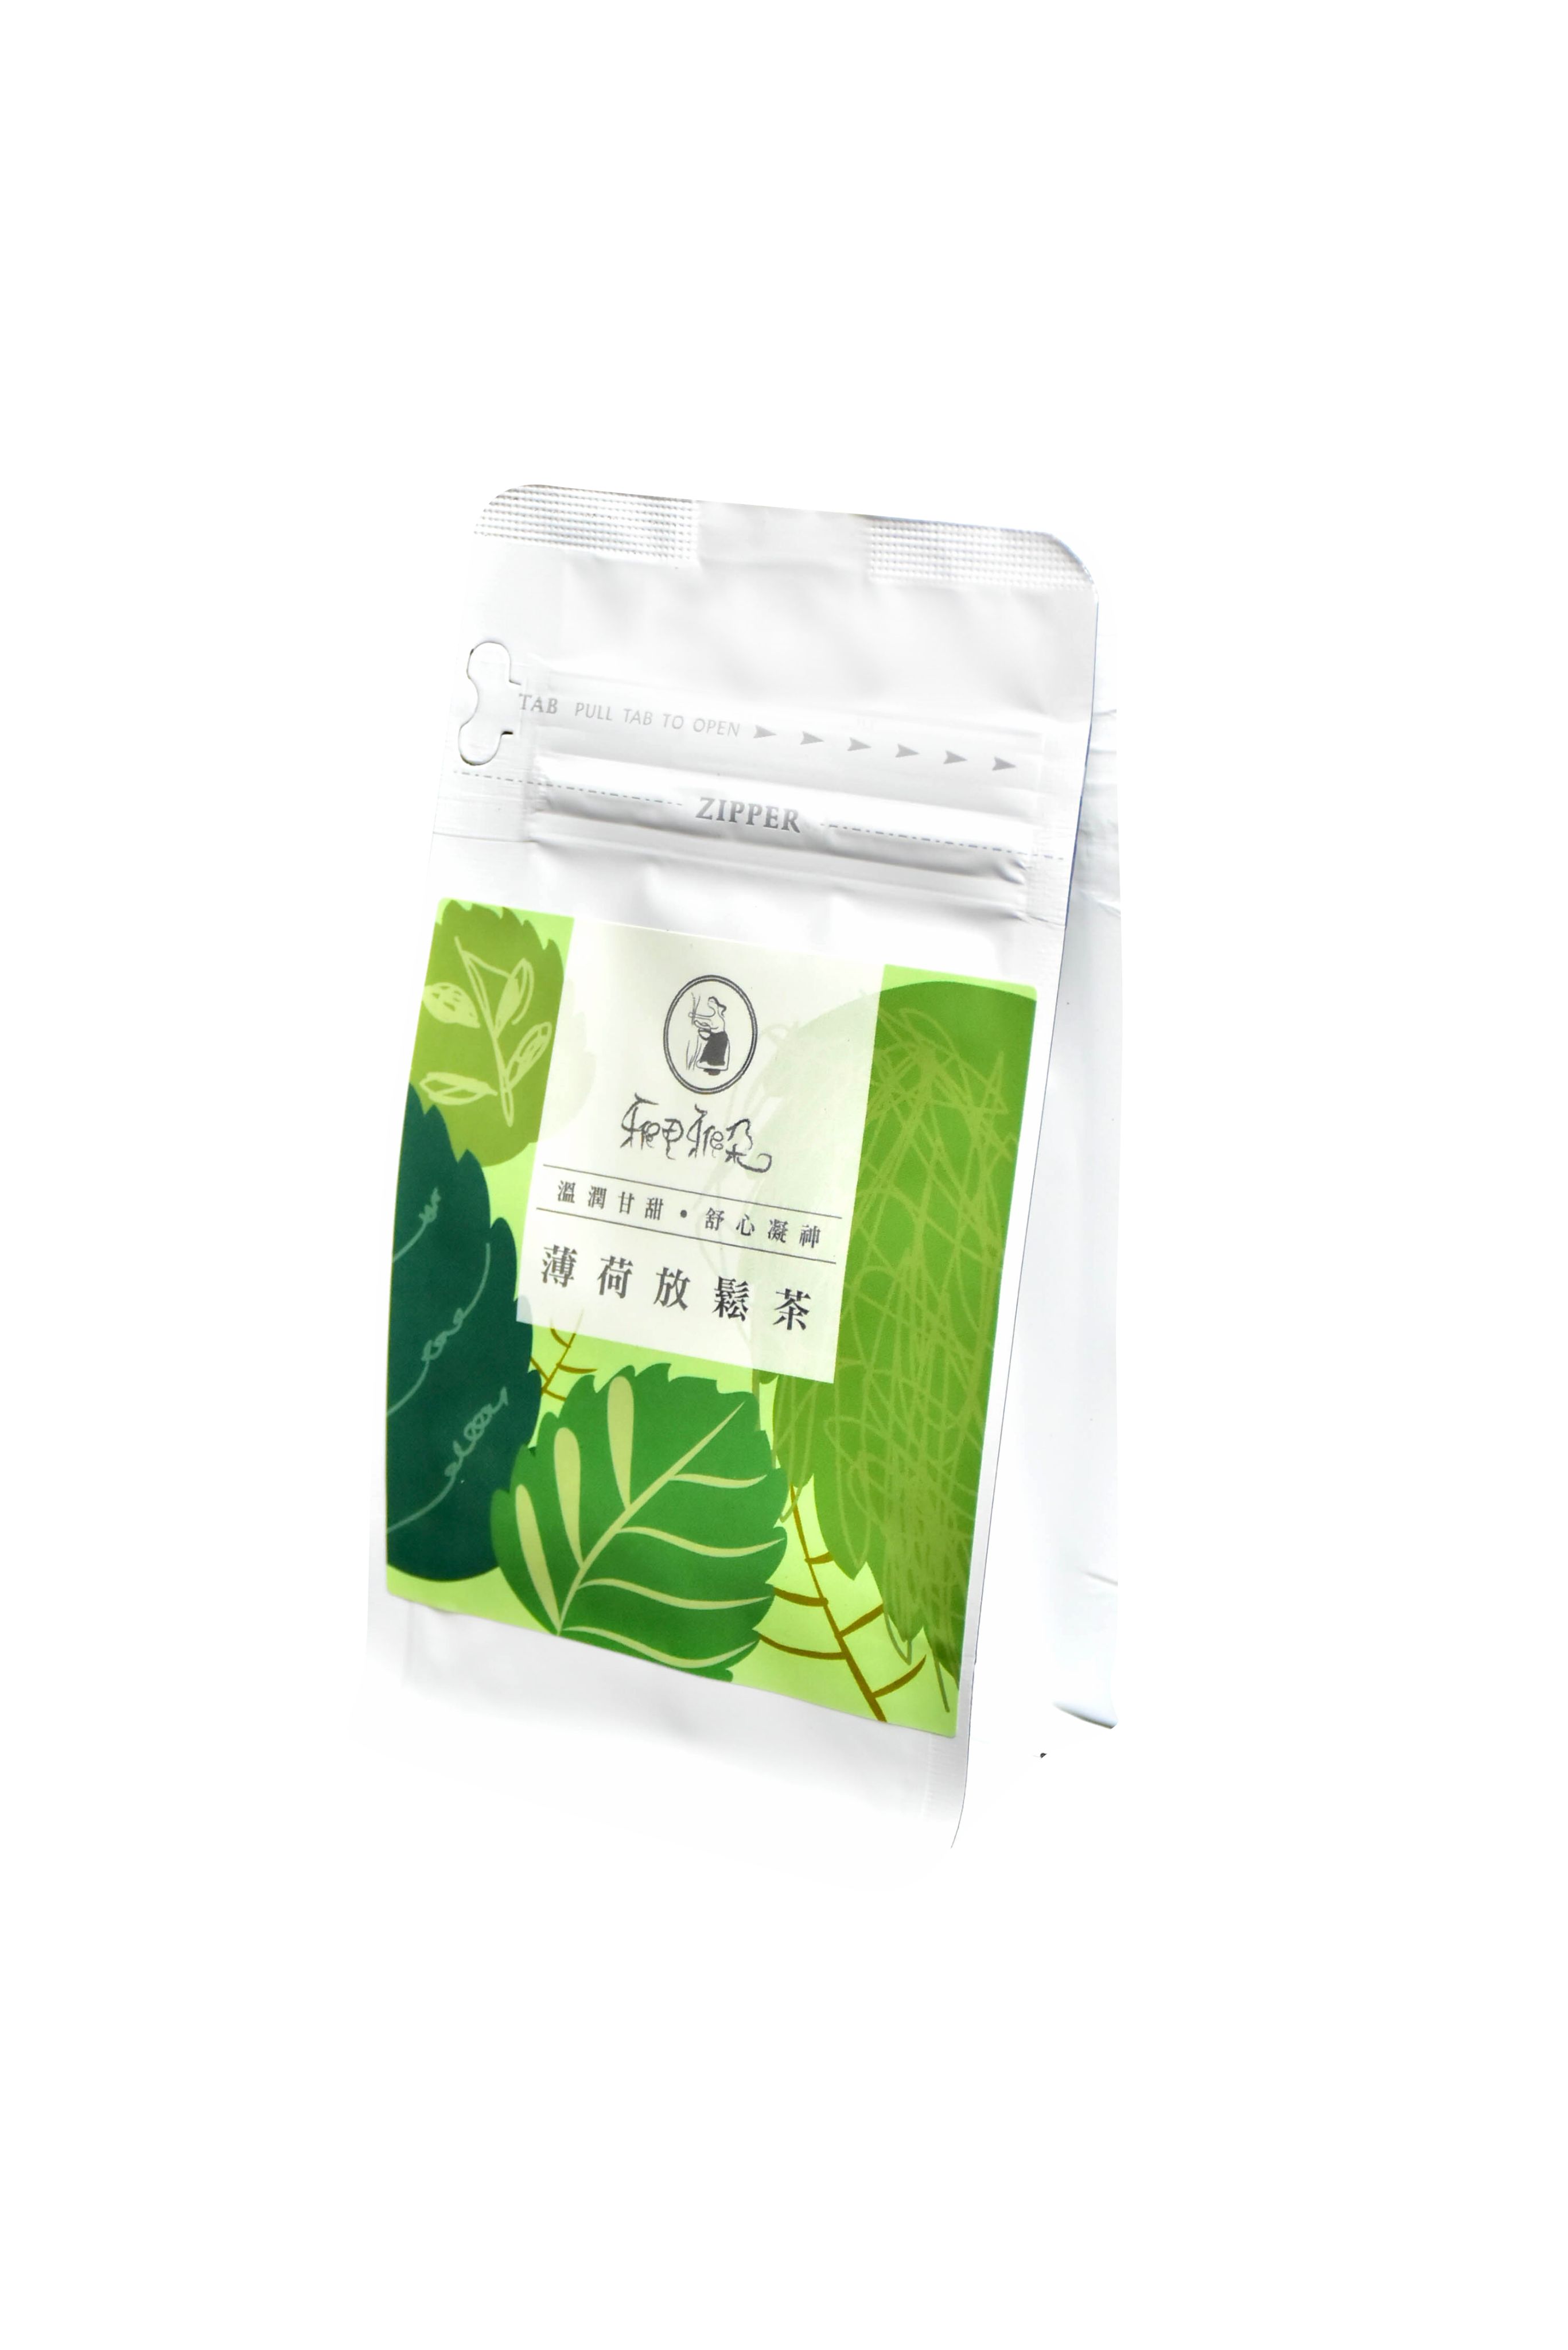 【雅植食品】三角立體茶包 - 10入裝系列